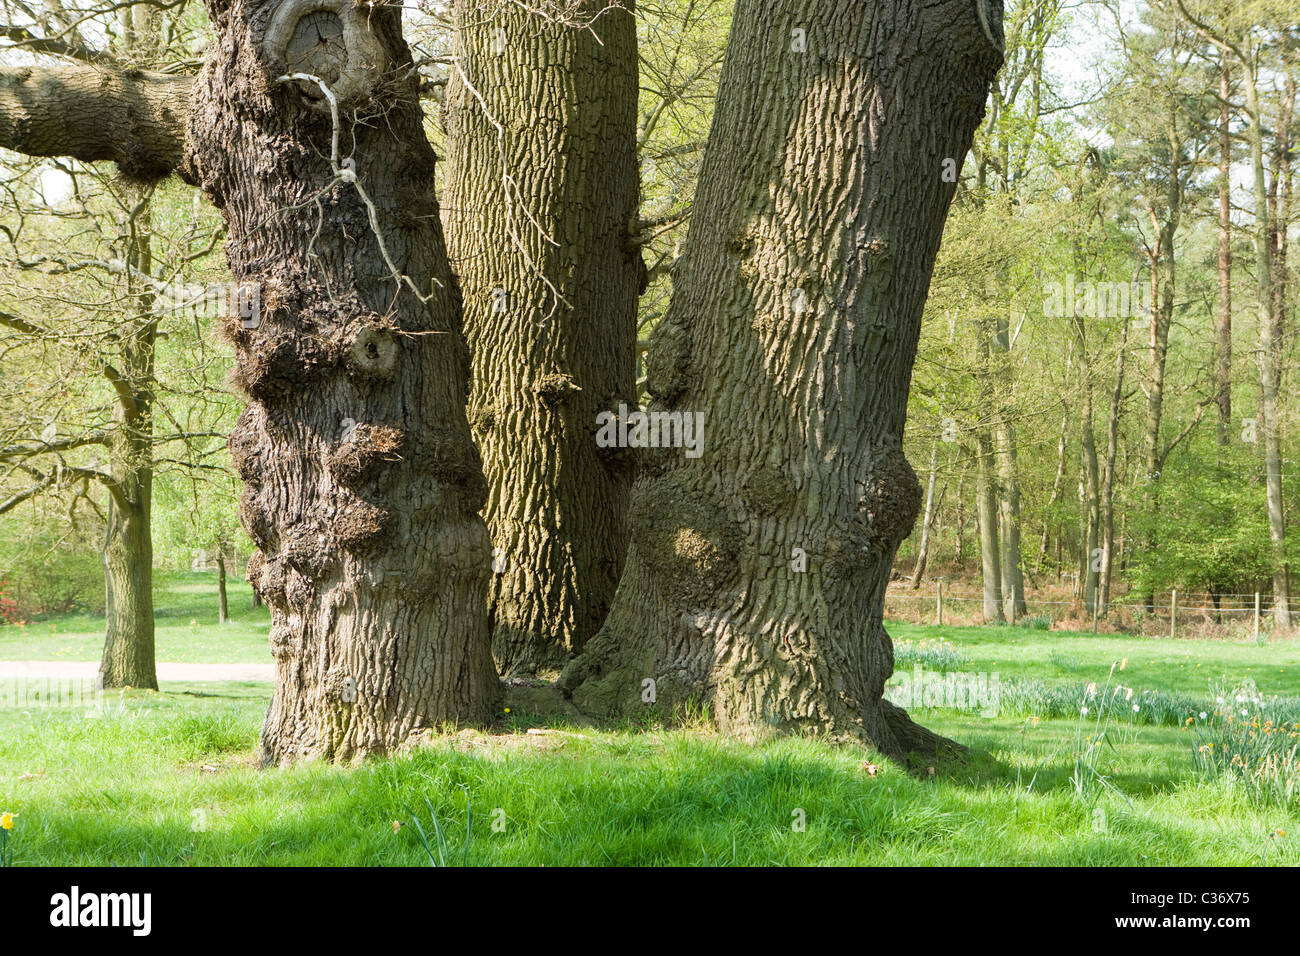 Large oak with multiple trunks, Surrey, UK Stock Photo